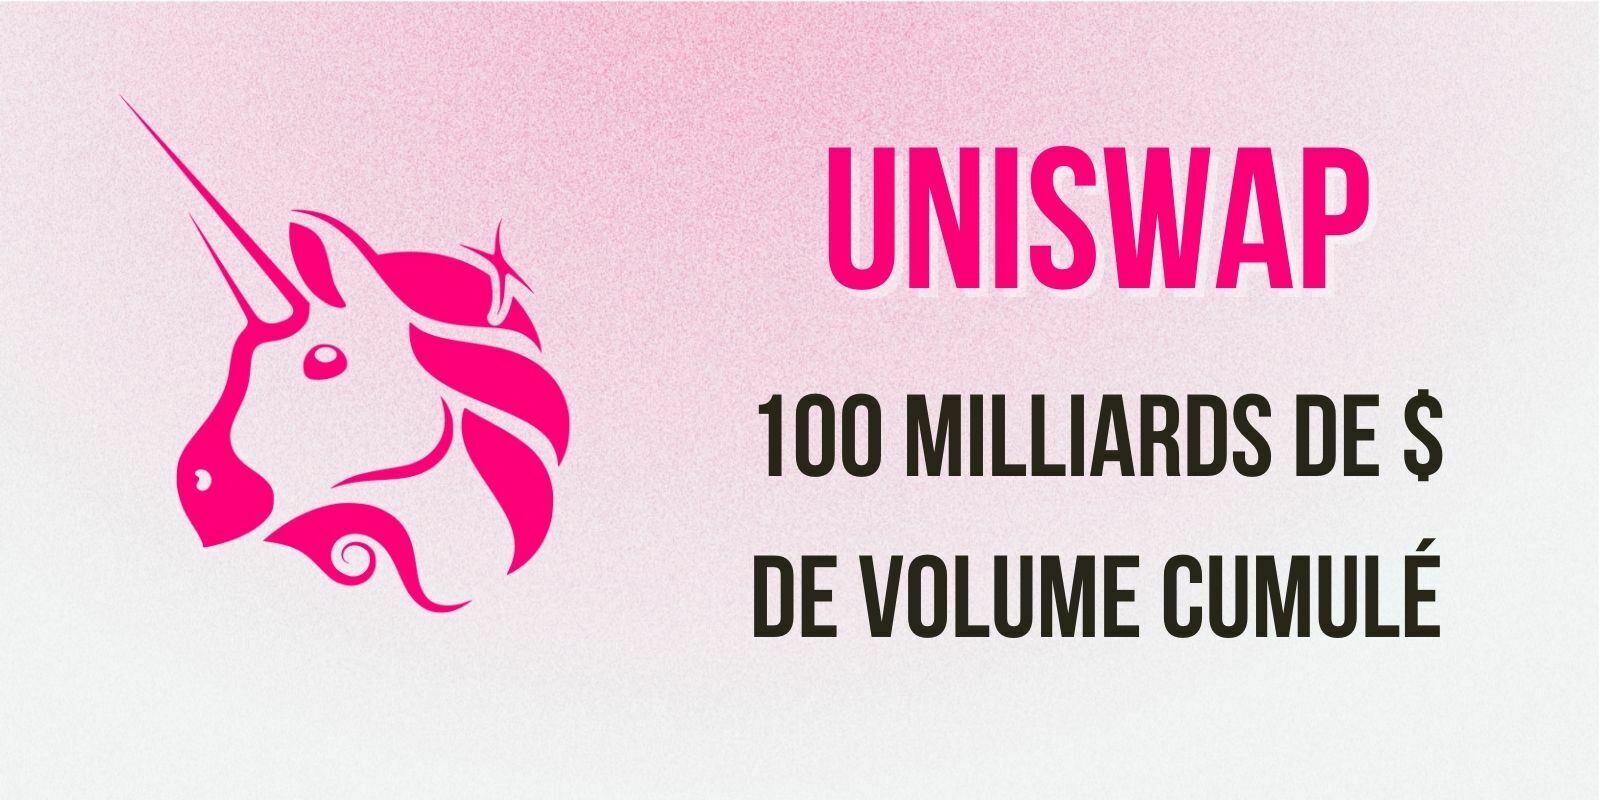 Uniswap devient le premier DEX à atteindre un volume de 100 milliards de dollars